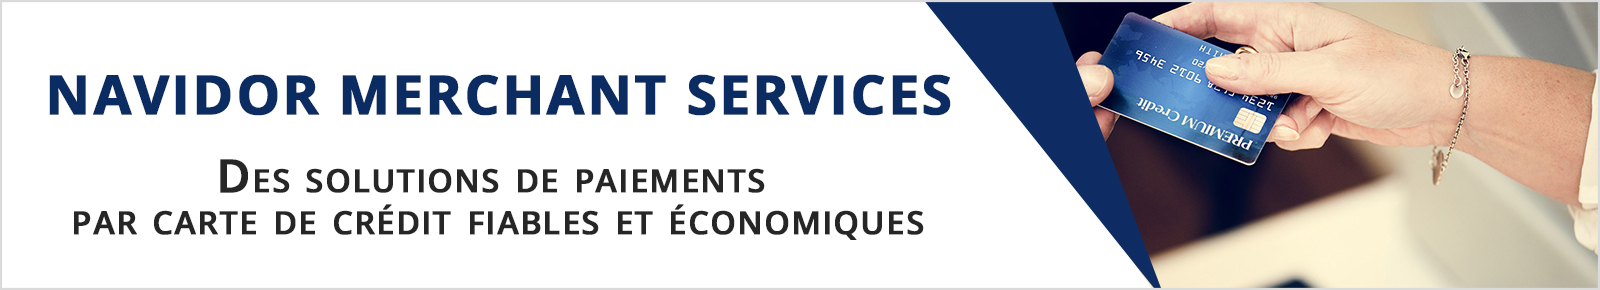 Navidor Merchant Services – Yves de Ternay